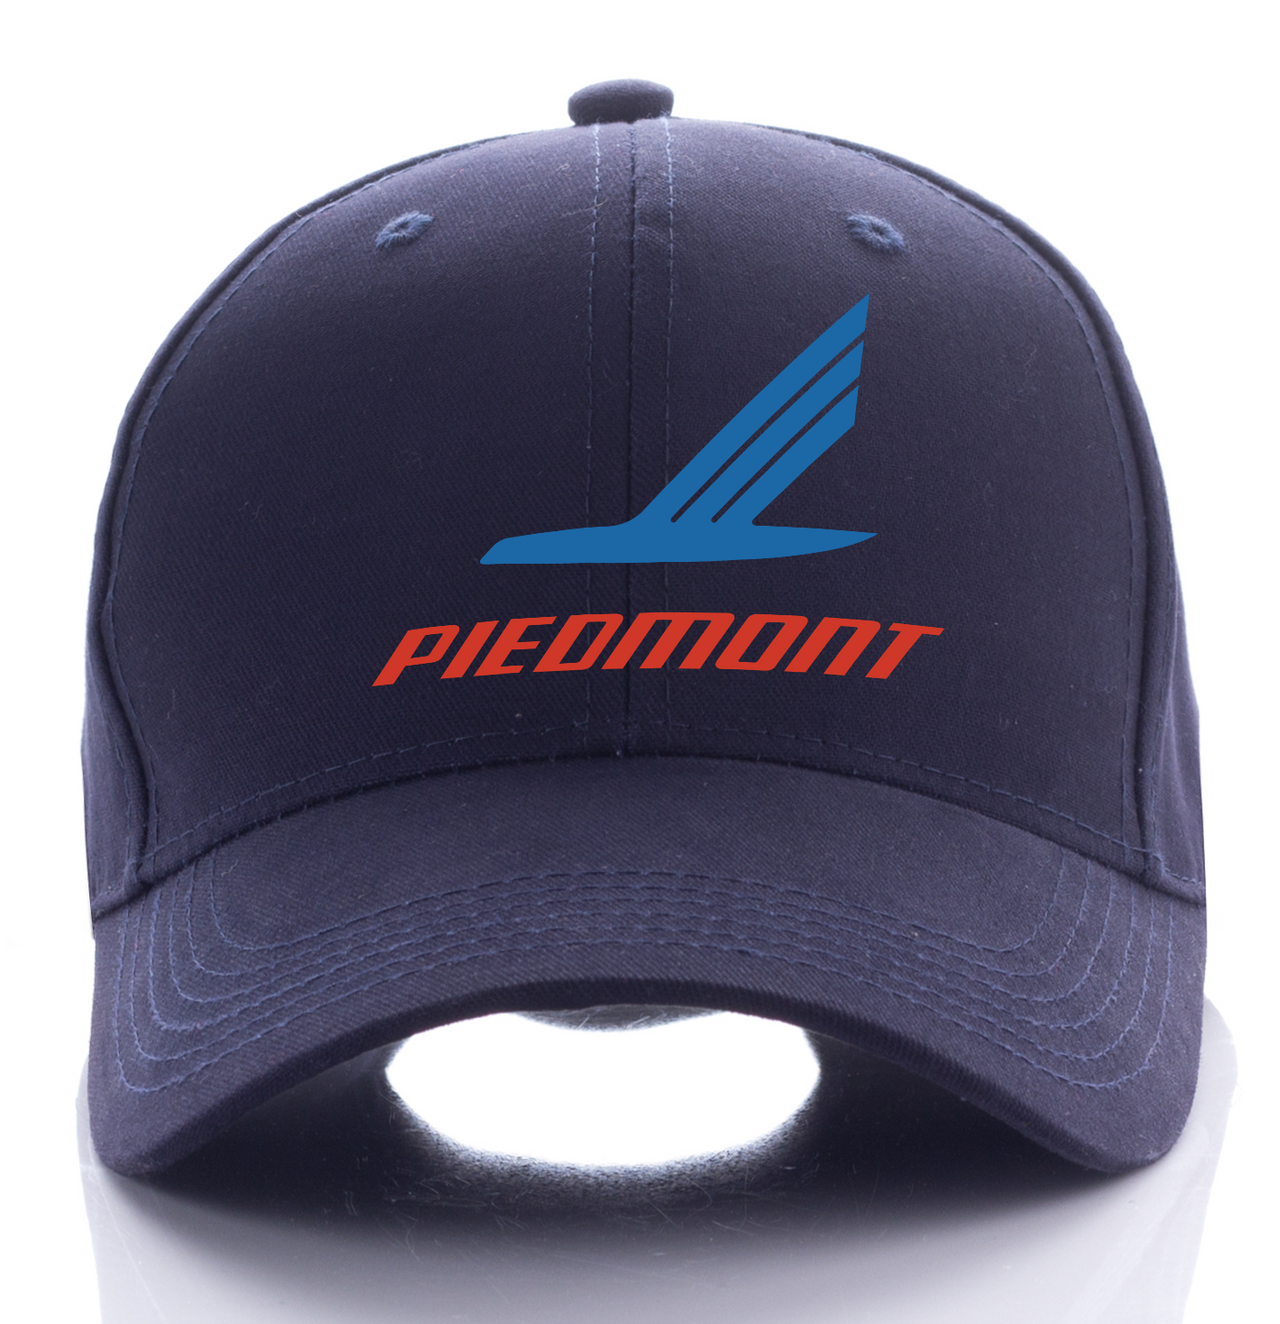 PIEDMONT AIRLINE DESIGNED CAP